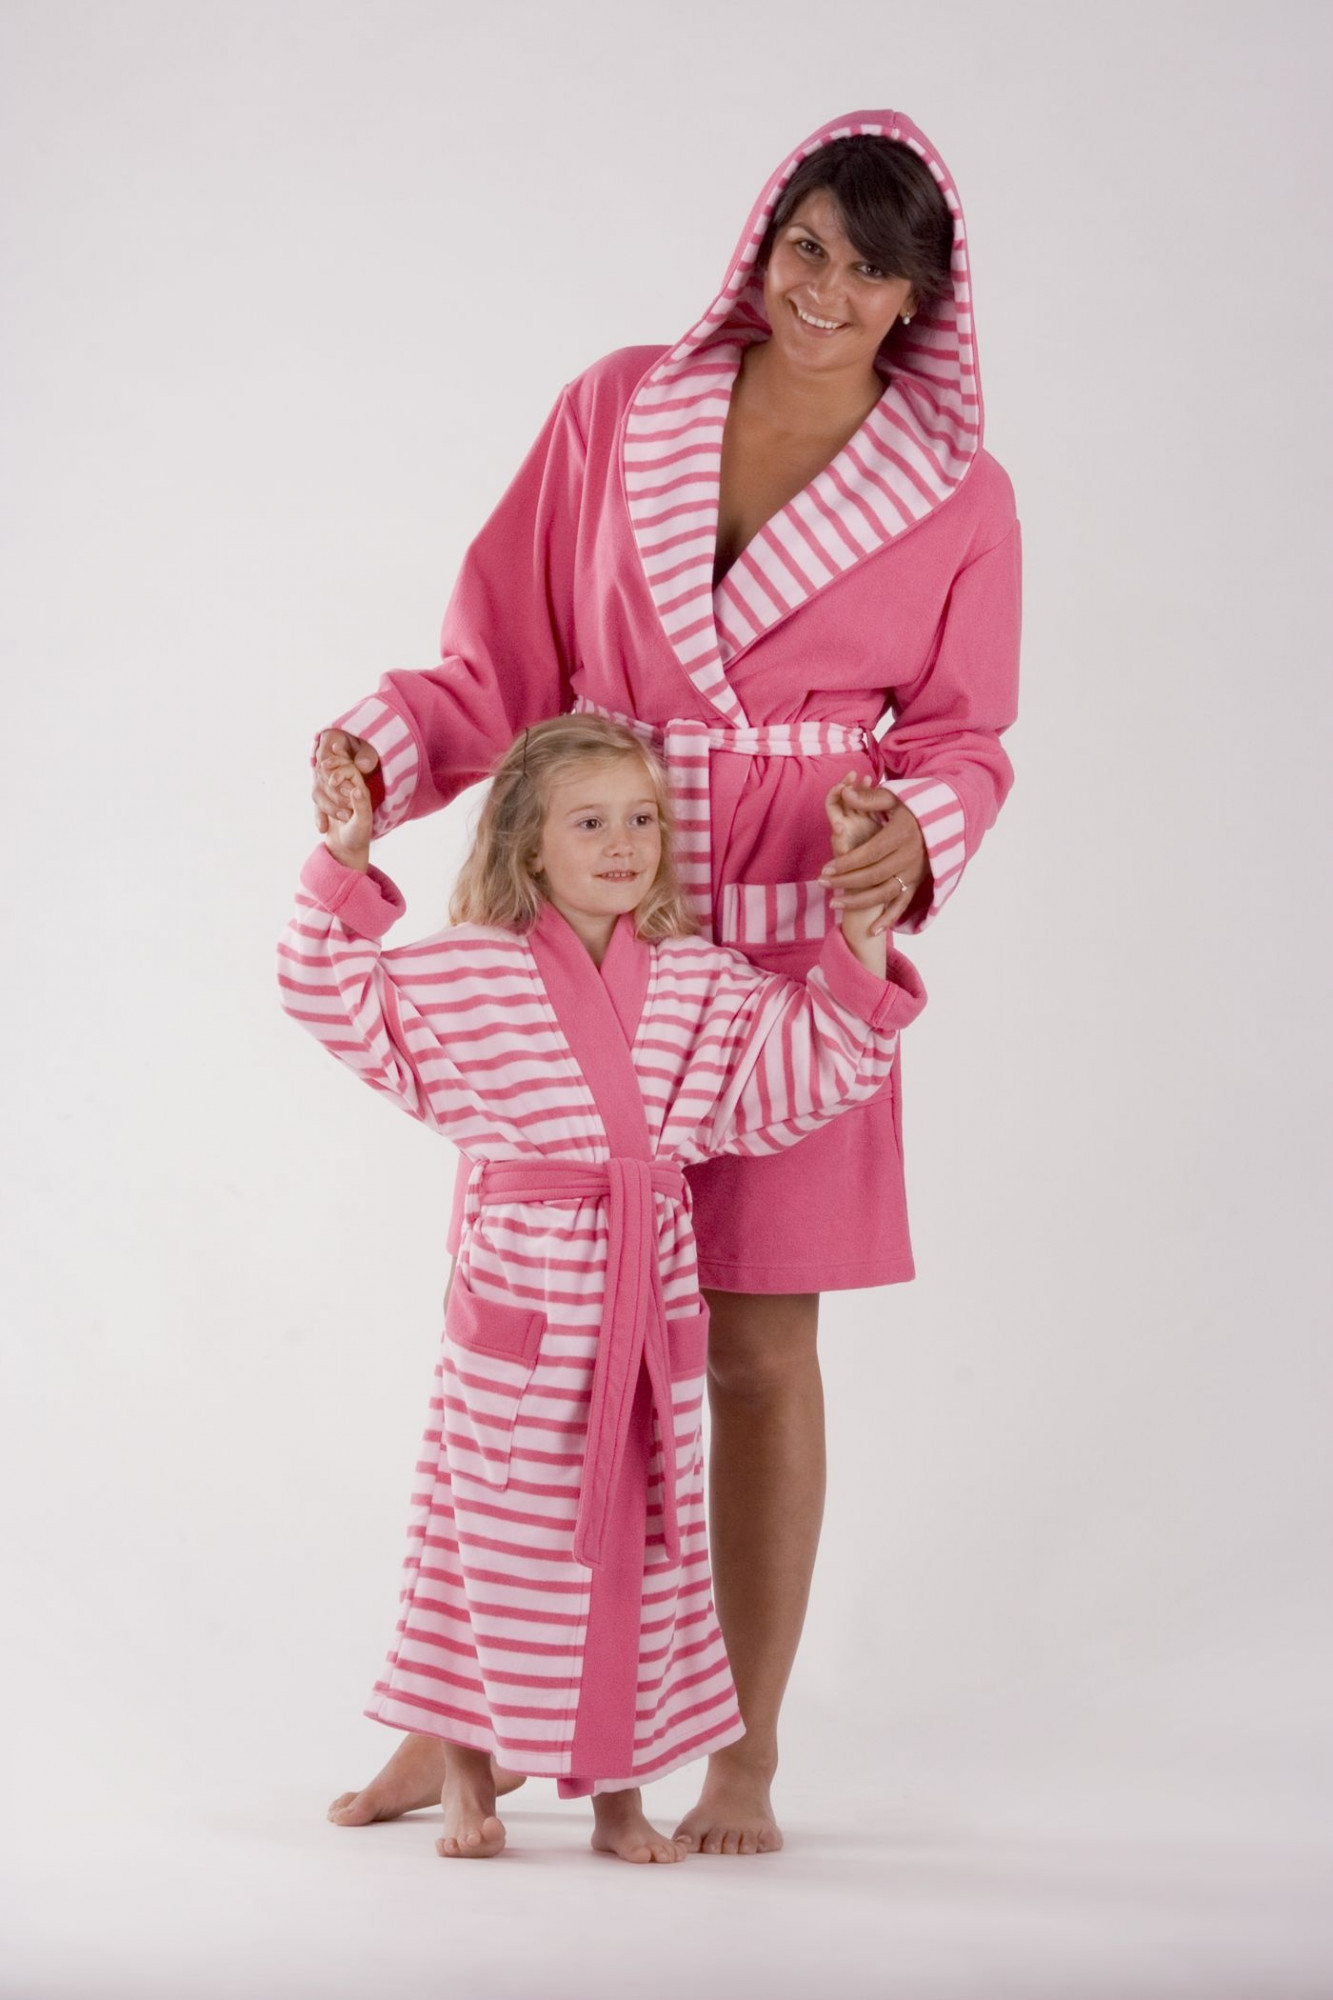 AKCE - Dívčí župan Pink stripes 92053002 růžový - Vestis 140